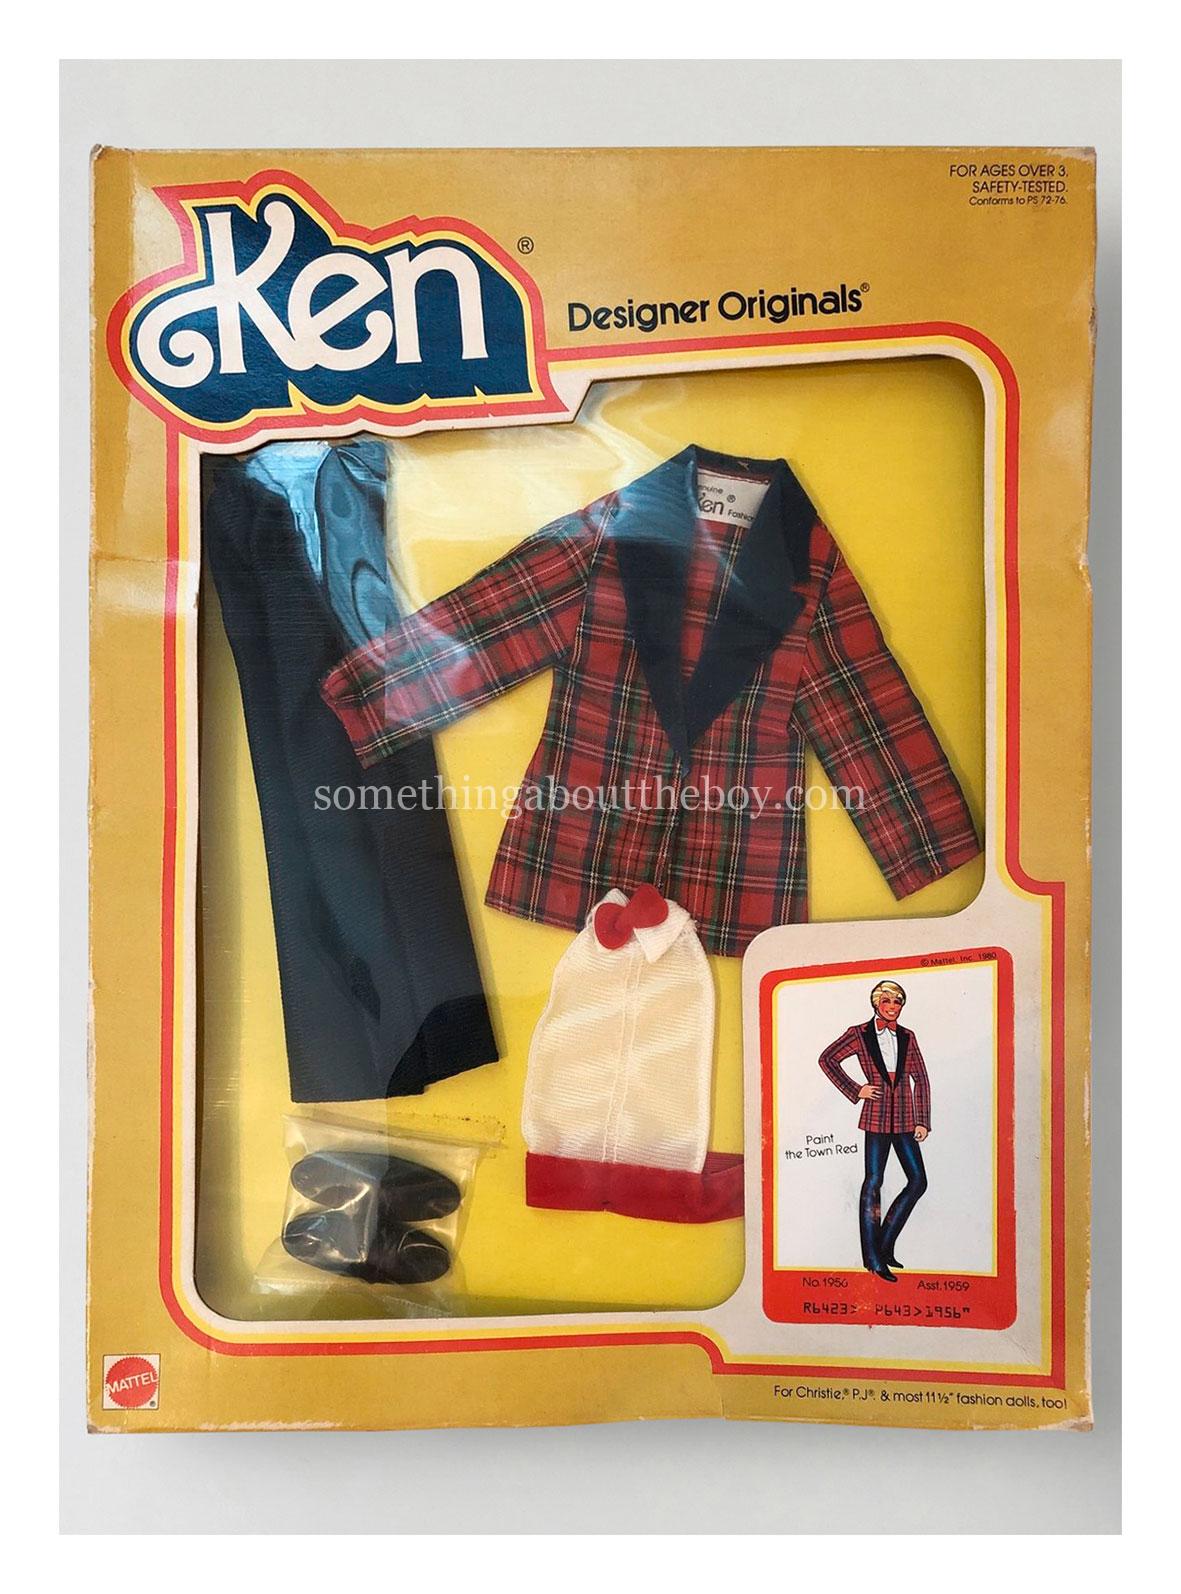 1981 Designer Originals #1956 in original packaging